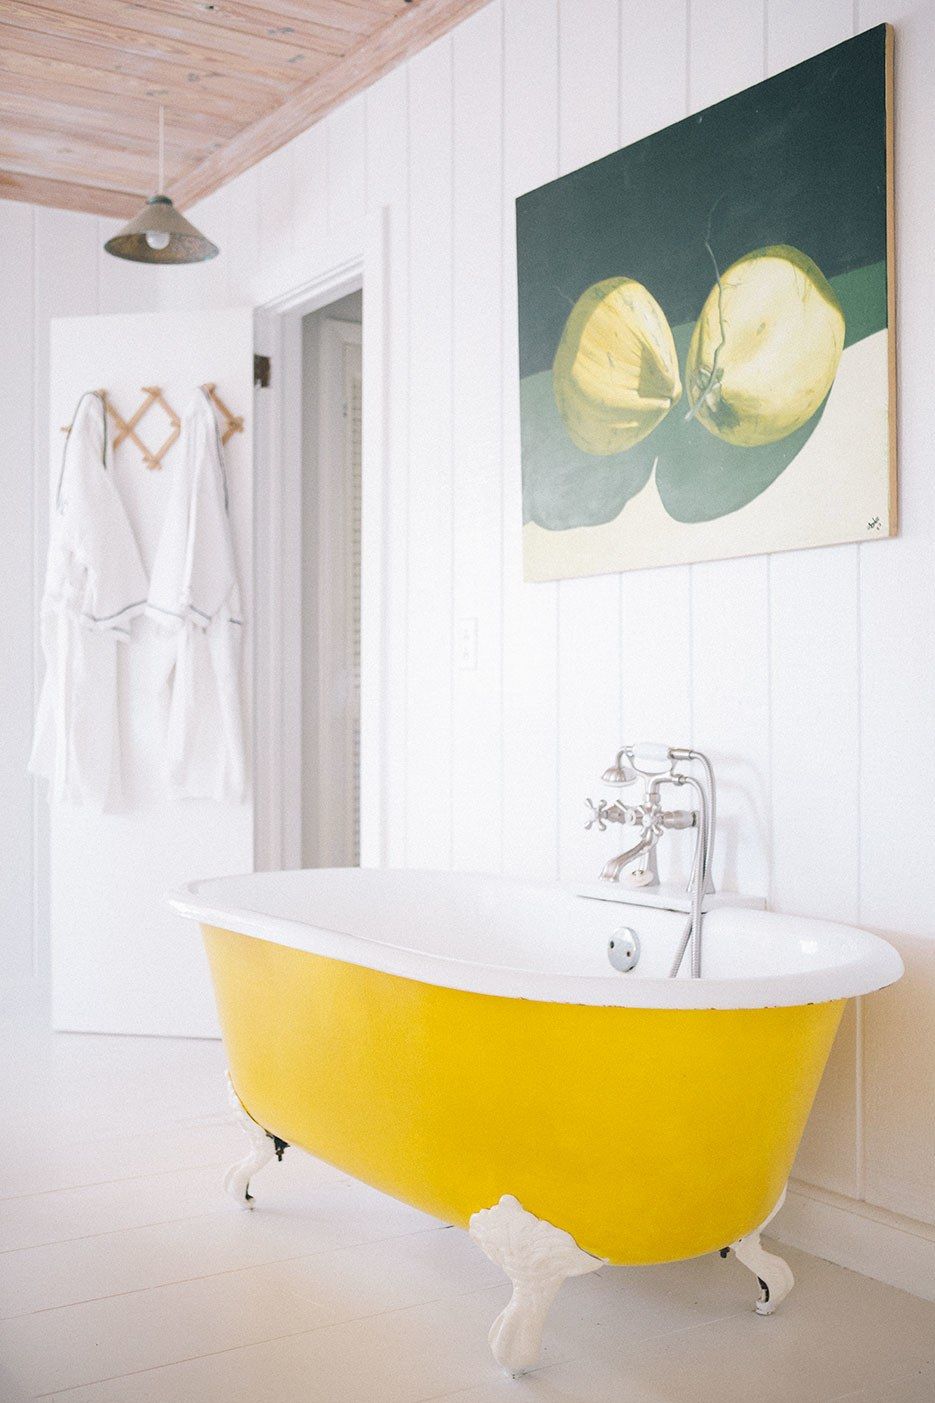 Cho căn phòng tắm gia đình thêm phần rực rỡ với điểm nhấn là chiếc bồn tắm đầy màu sắc - Ảnh 4.